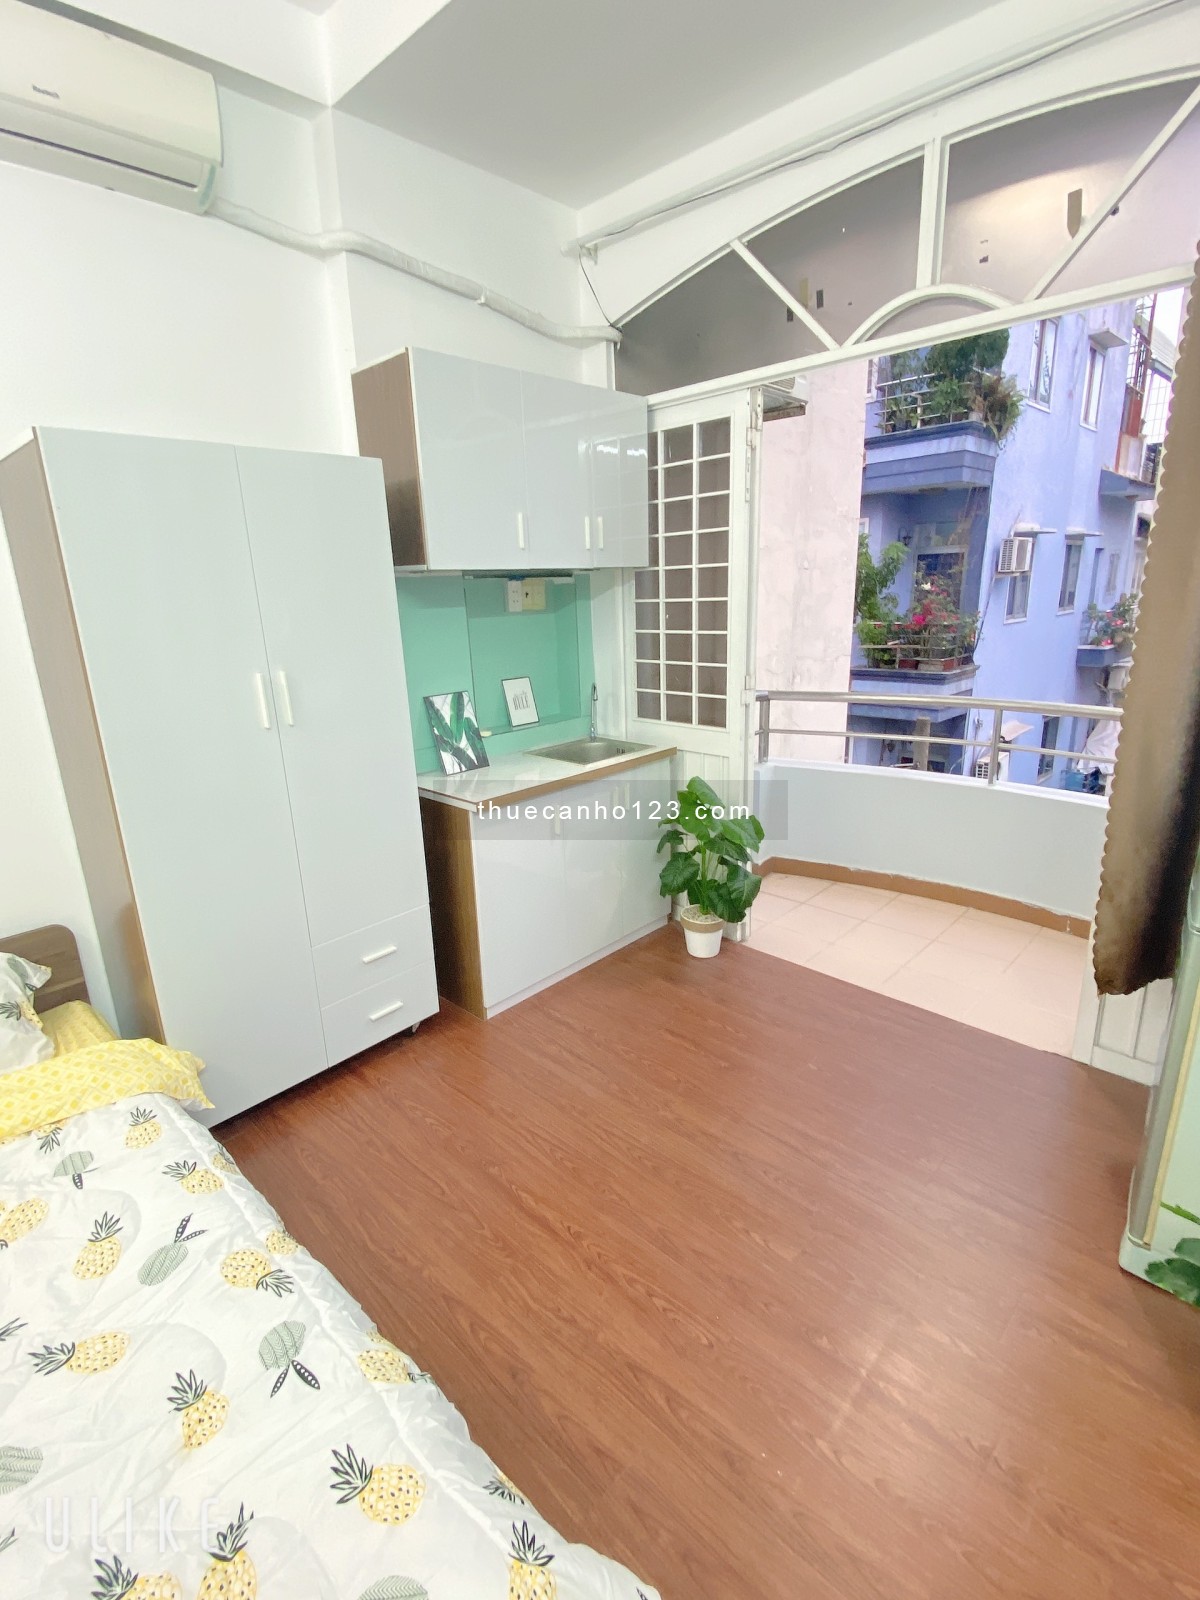 Căn hộ 1PN và studio balcon máy giặt riêng sẵn nội thất gần chợ Tân Định Q1